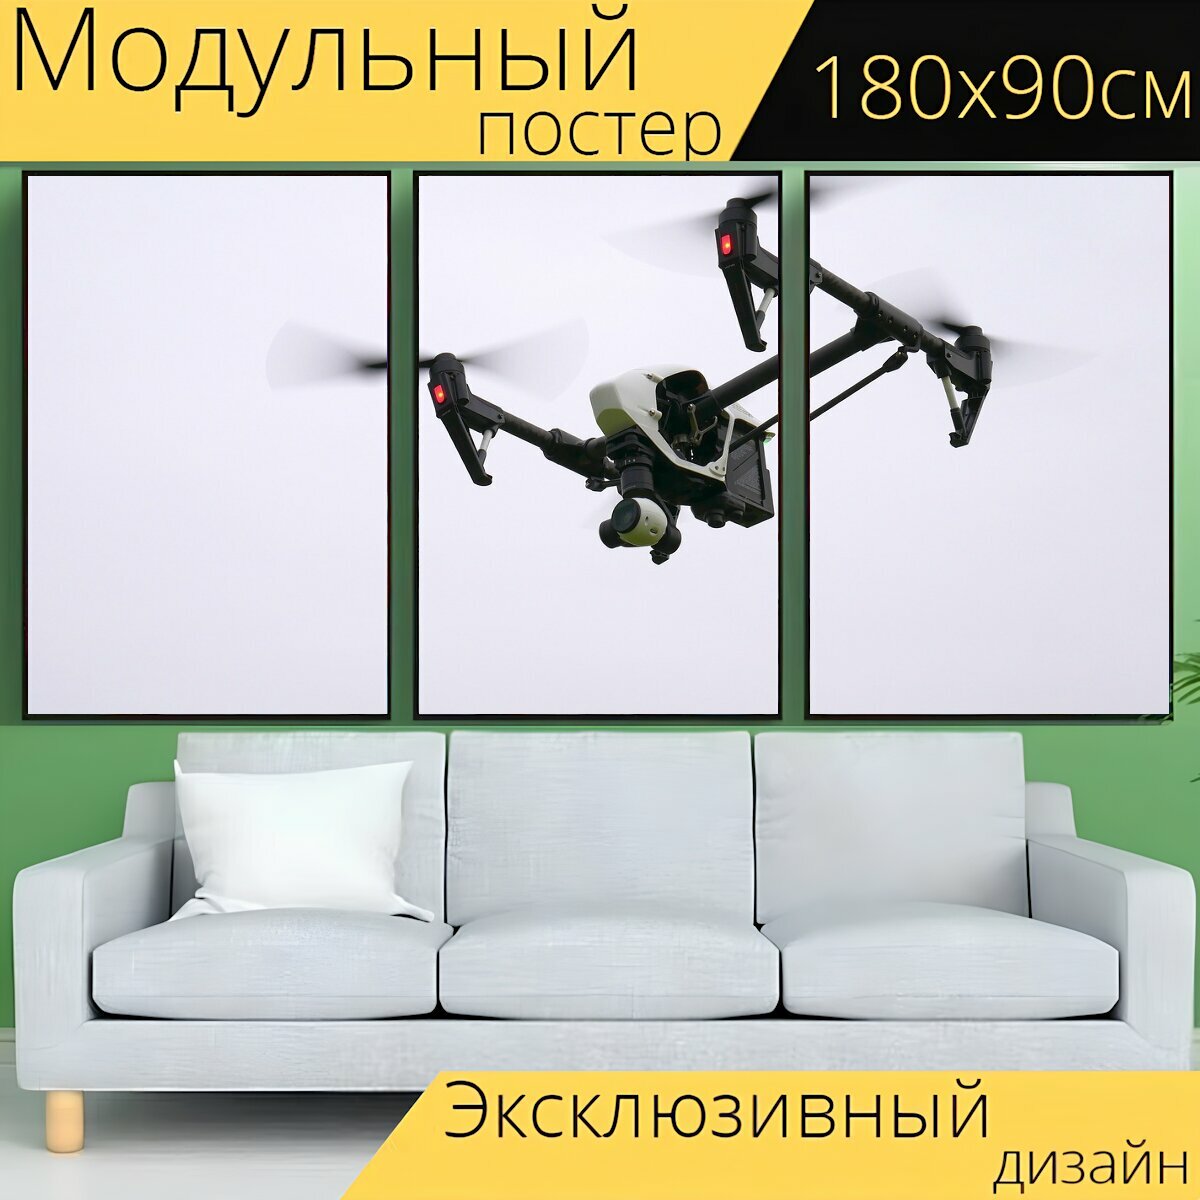 Модульный постер "Бпла, дрон, воздуха" 180 x 90 см. для интерьера